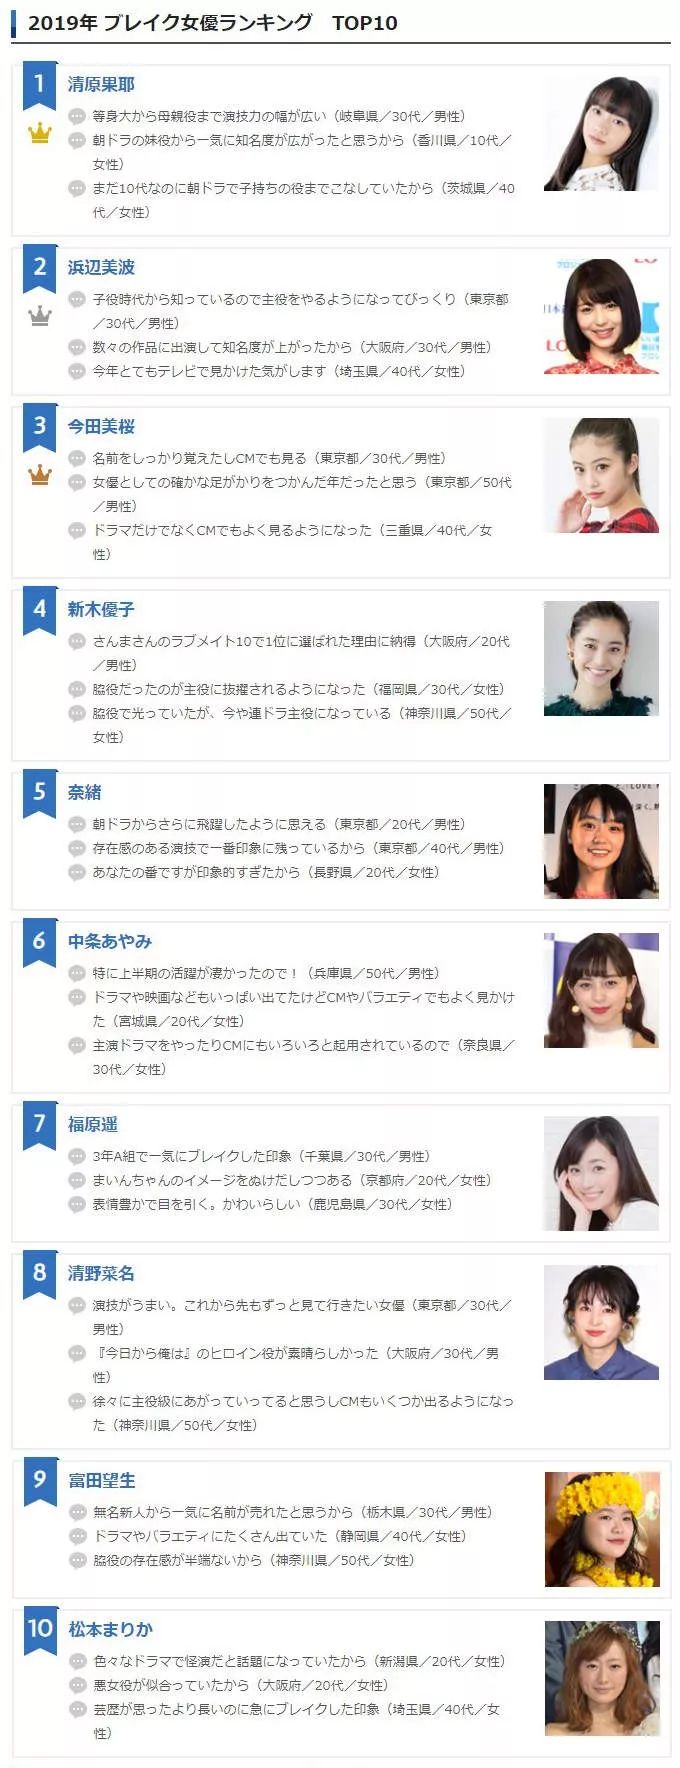 日本公布19年爆红女星 第一名新世代美女居然是她 东京新青年 微信公众号文章阅读 Wemp